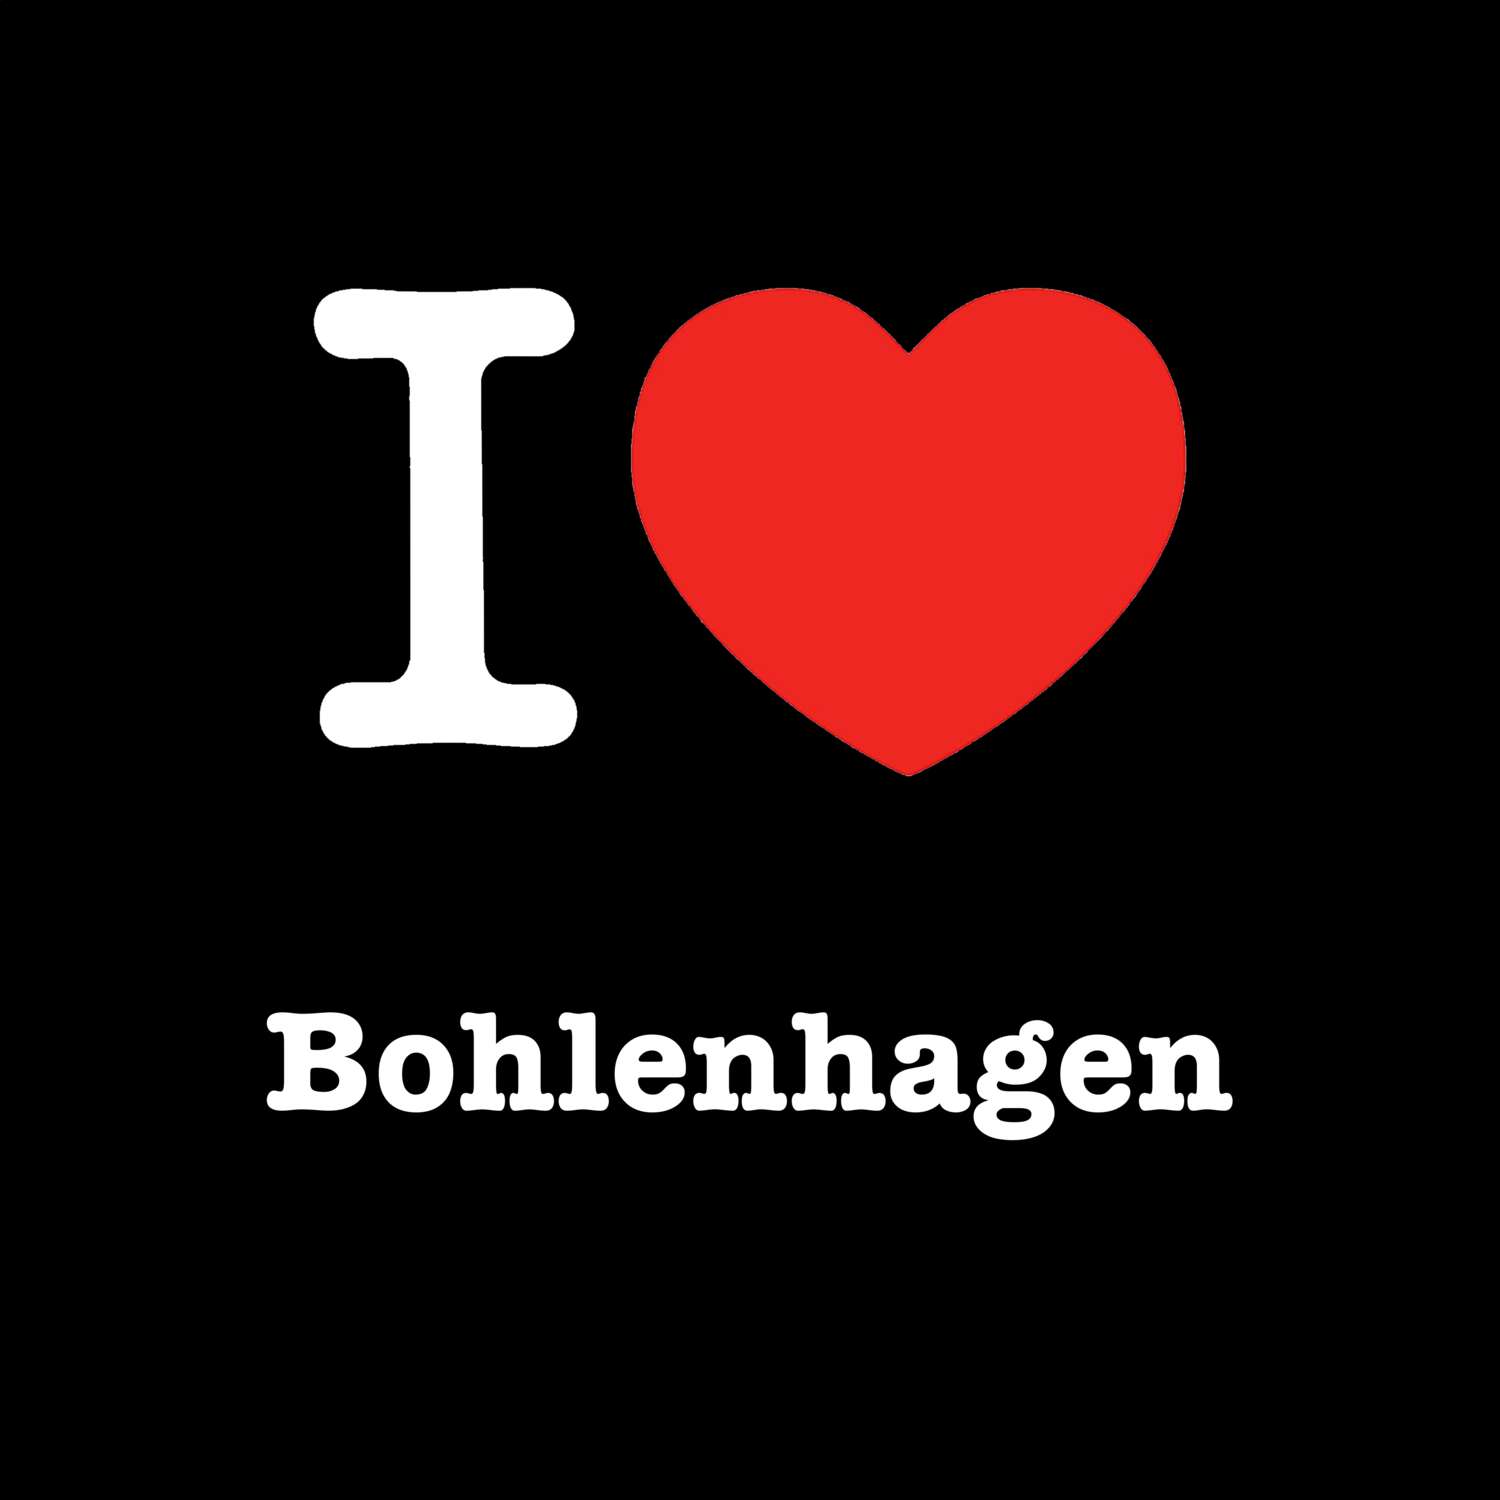 Bohlenhagen T-Shirt »I love«